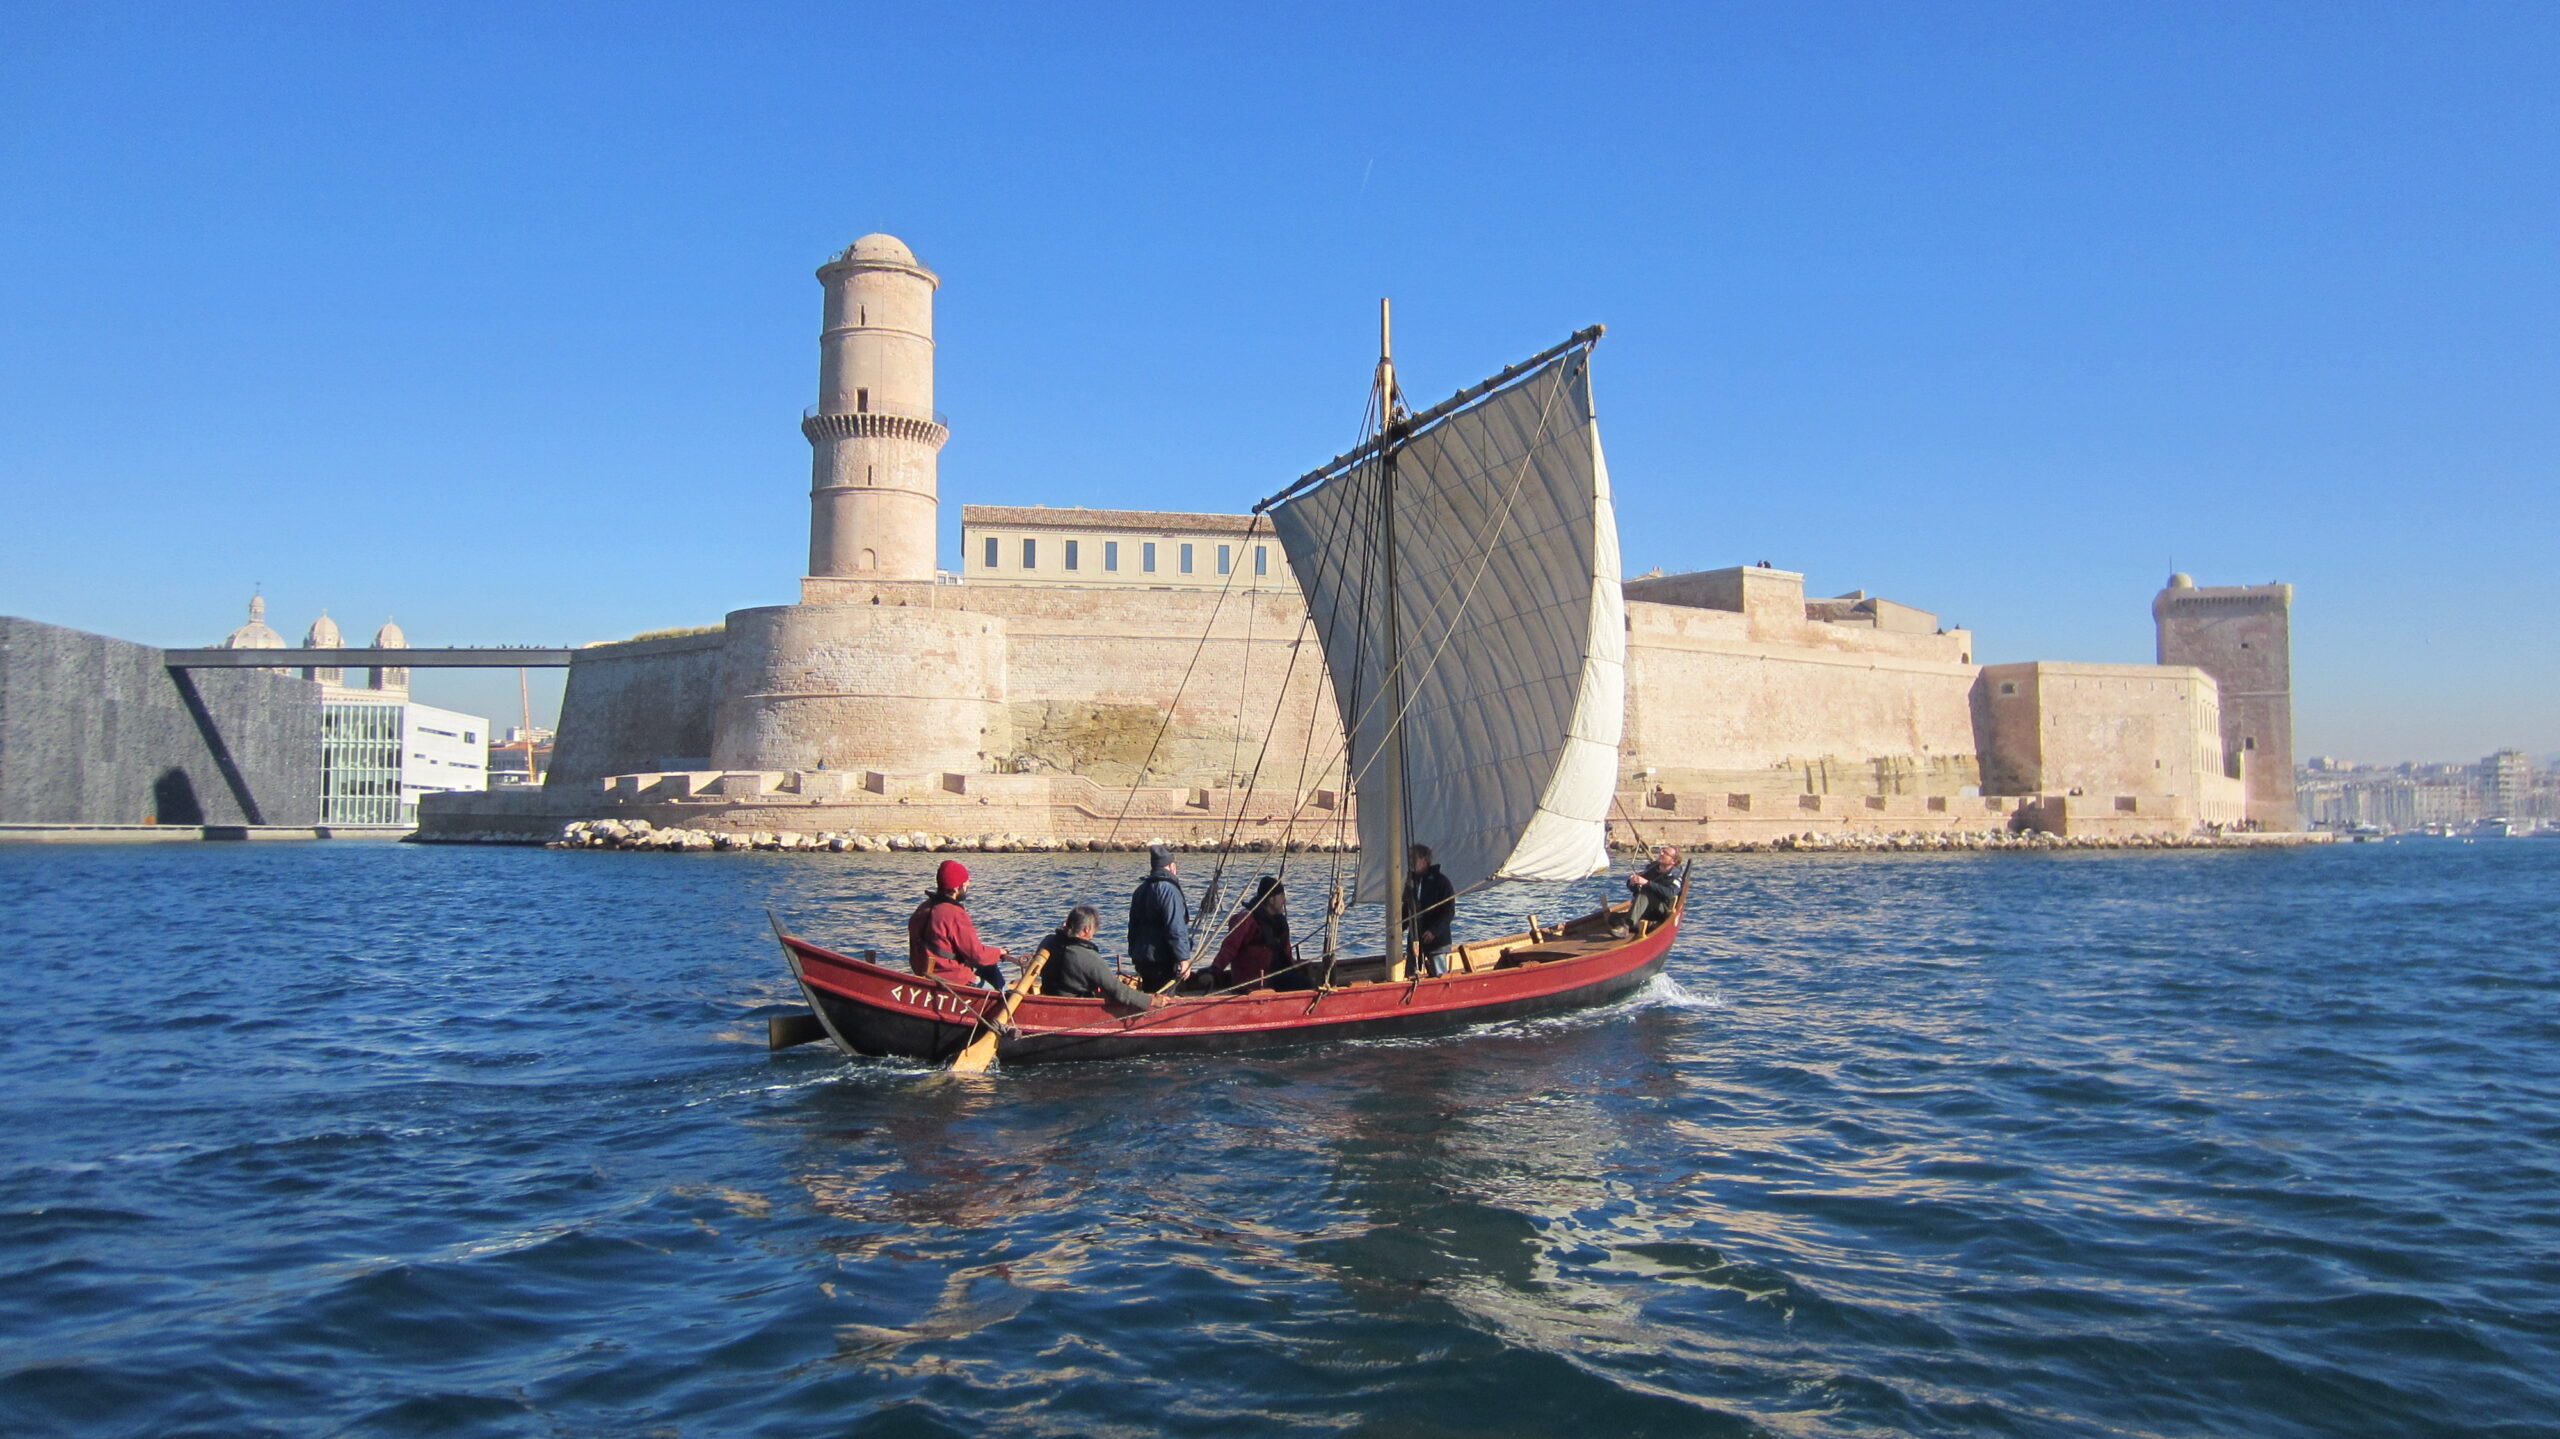 ΓΥΠΤΙΣ: Ένα ελληνικό πλοίο της Μασσαλίας από τον 6ο αιώνα π.Χ.